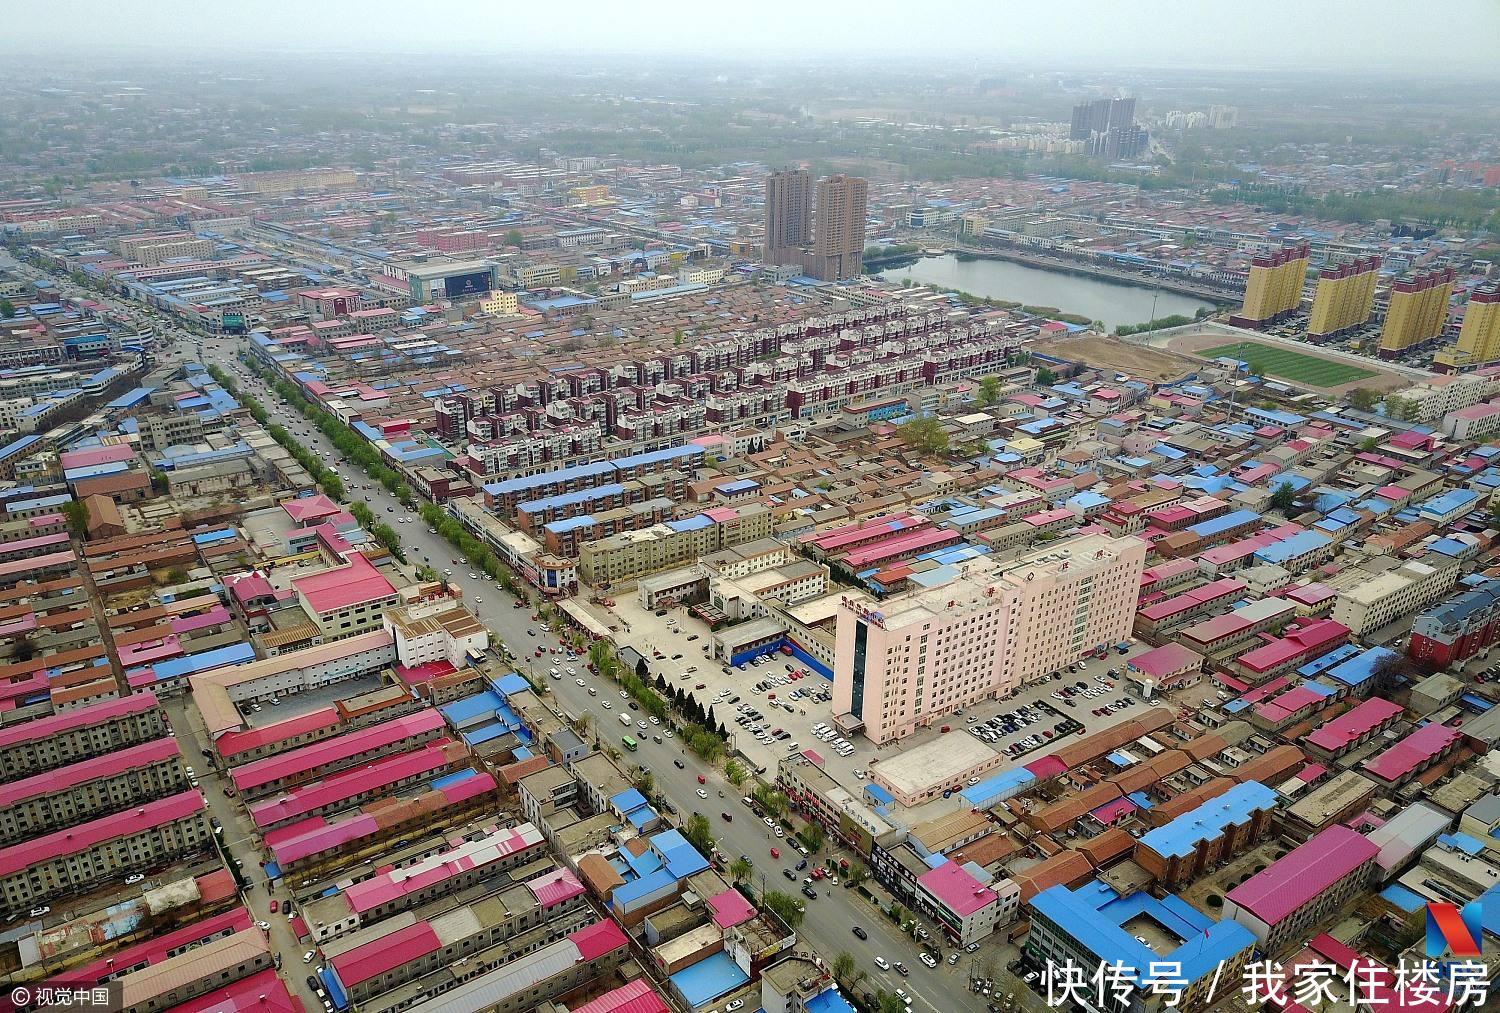 国务院批复雄安新区规划:严禁大规模商业房地